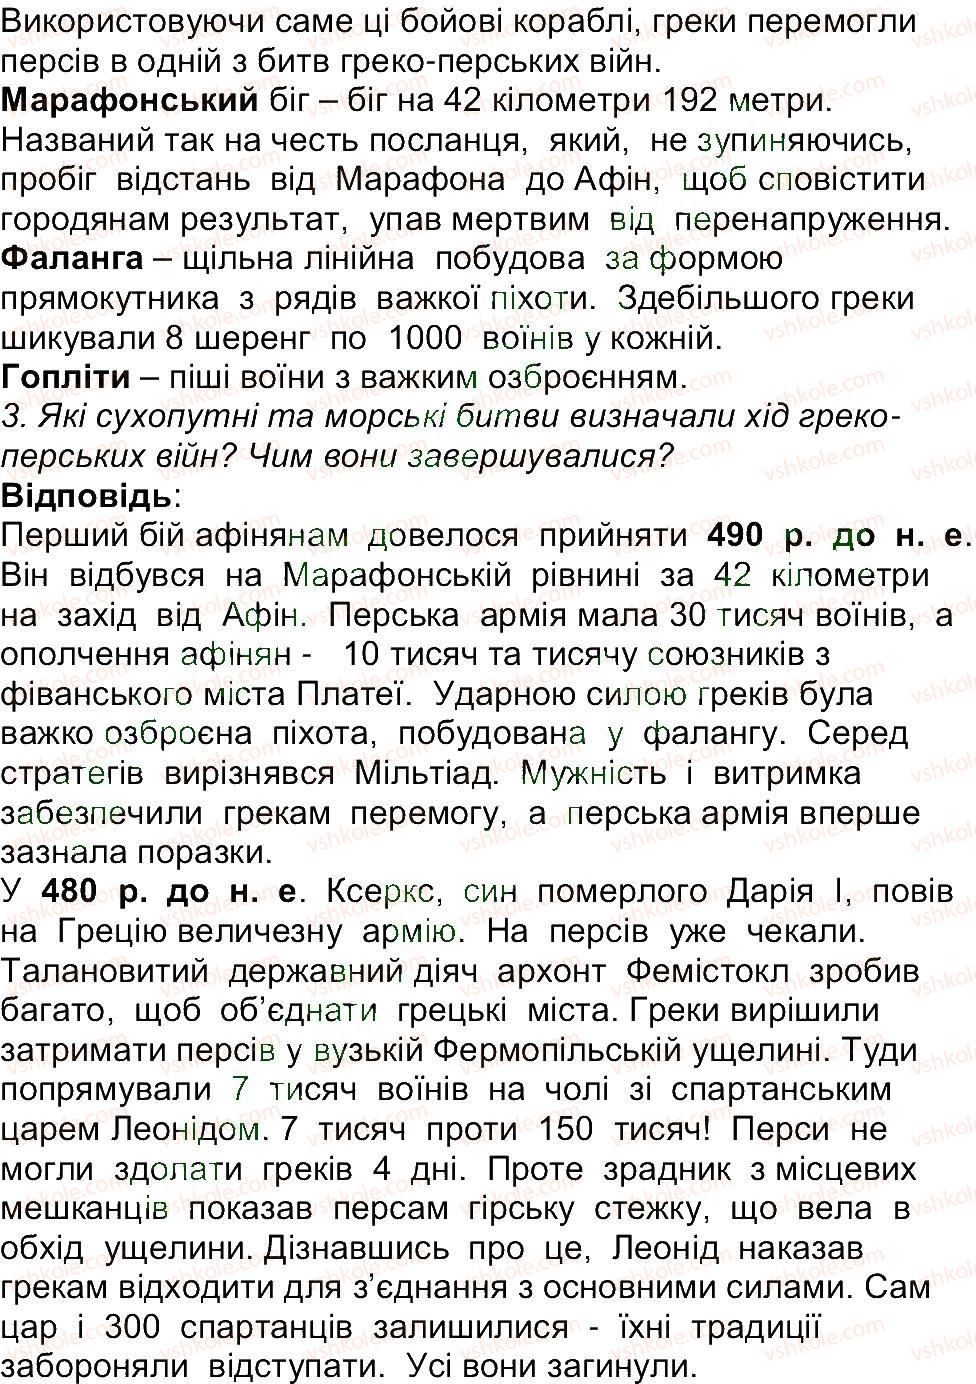 6-istoriya-og-bandrovskij-vs-vlasov-2014--storinki-143200-159-rnd6309.jpg